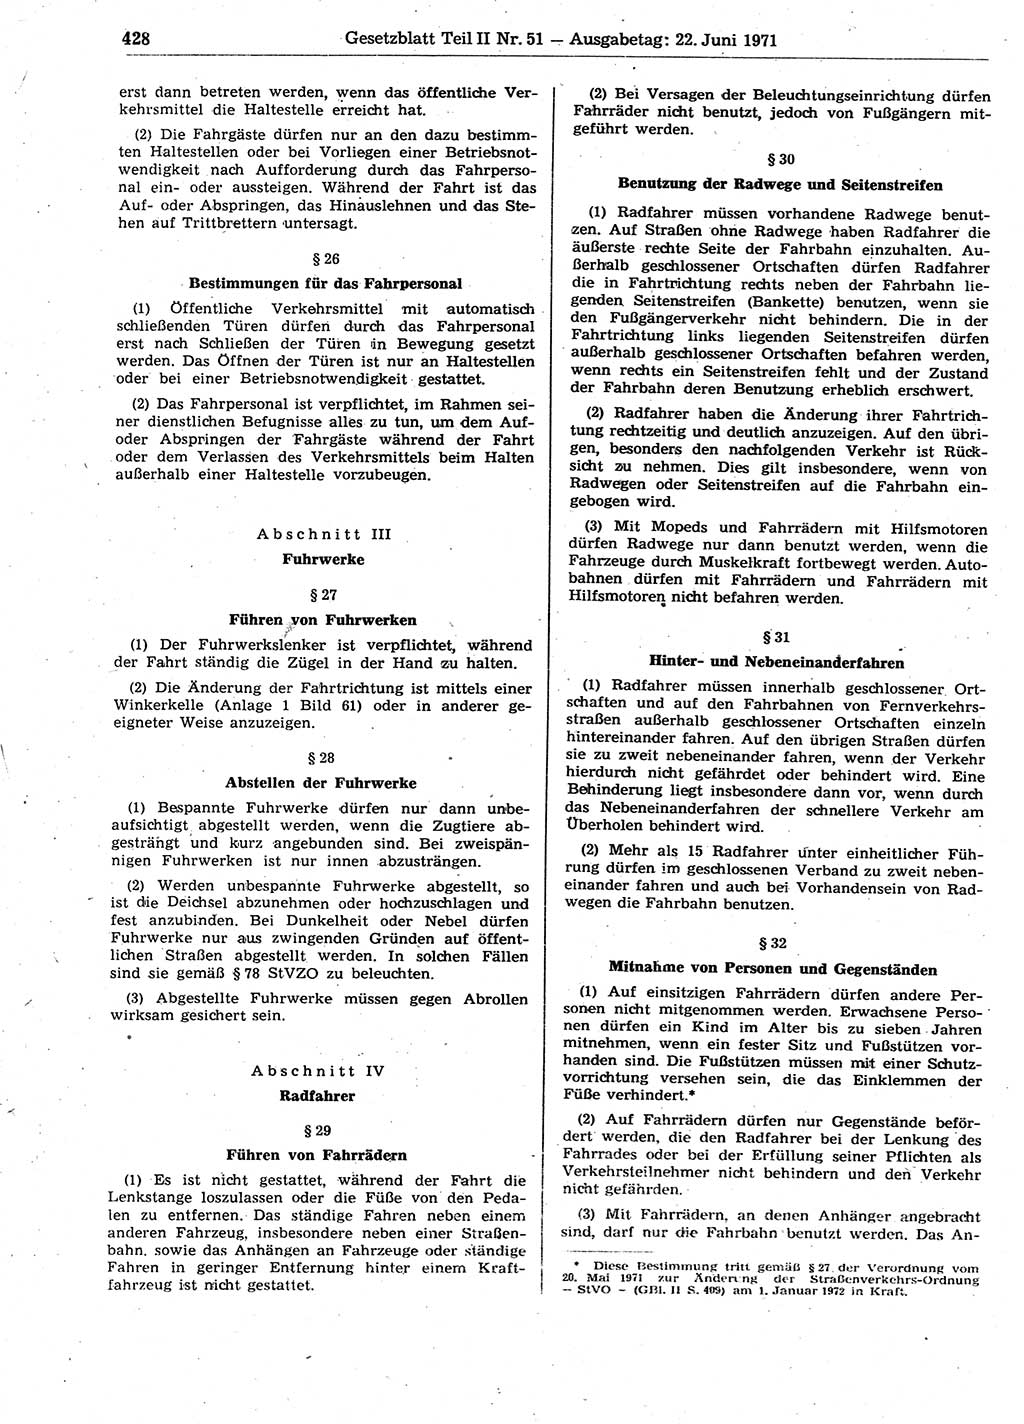 Gesetzblatt (GBl.) der Deutschen Demokratischen Republik (DDR) Teil ⅠⅠ 1971, Seite 428 (GBl. DDR ⅠⅠ 1971, S. 428)